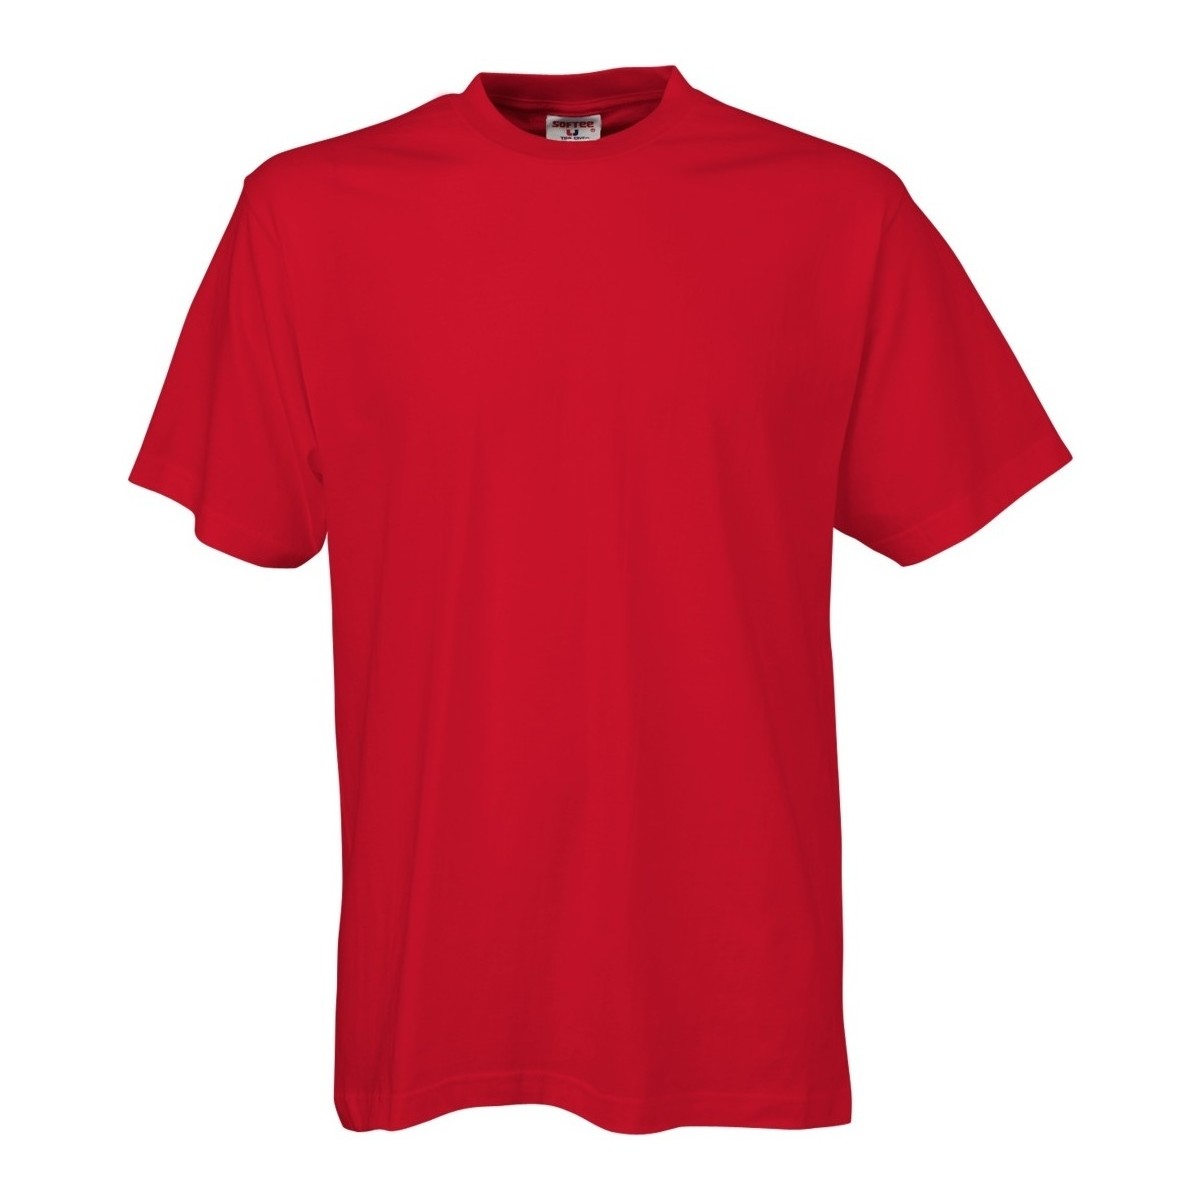 textil Hombre Camisetas manga corta Tee Jays TJ8000 Rojo